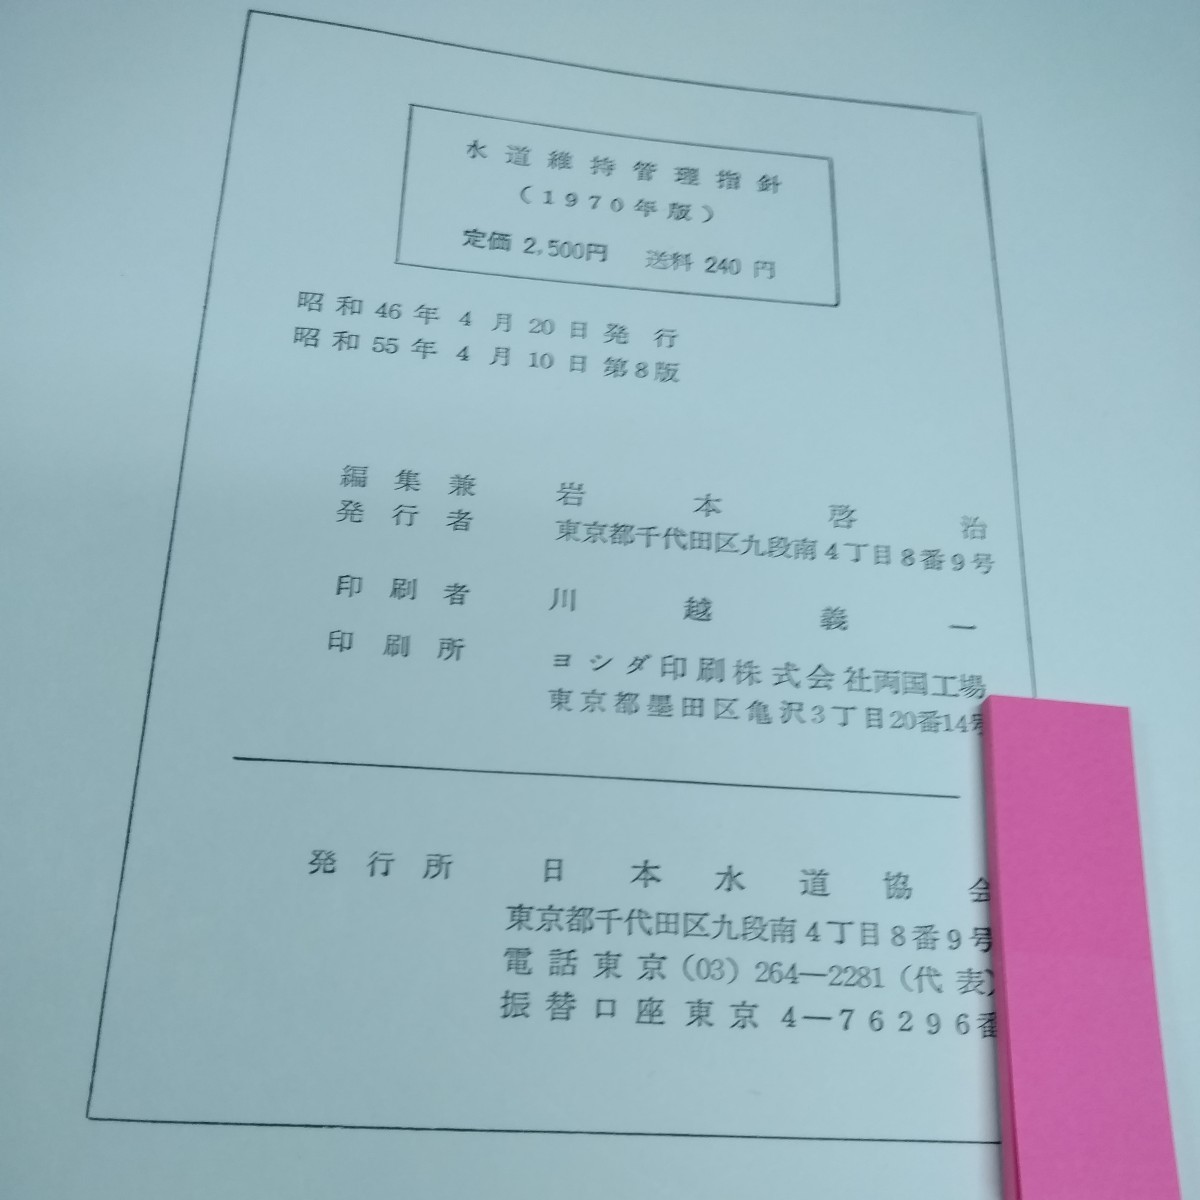 d-033 水道維持管理指針1970年版　日本水道協会※10_付箋の下に印影あり